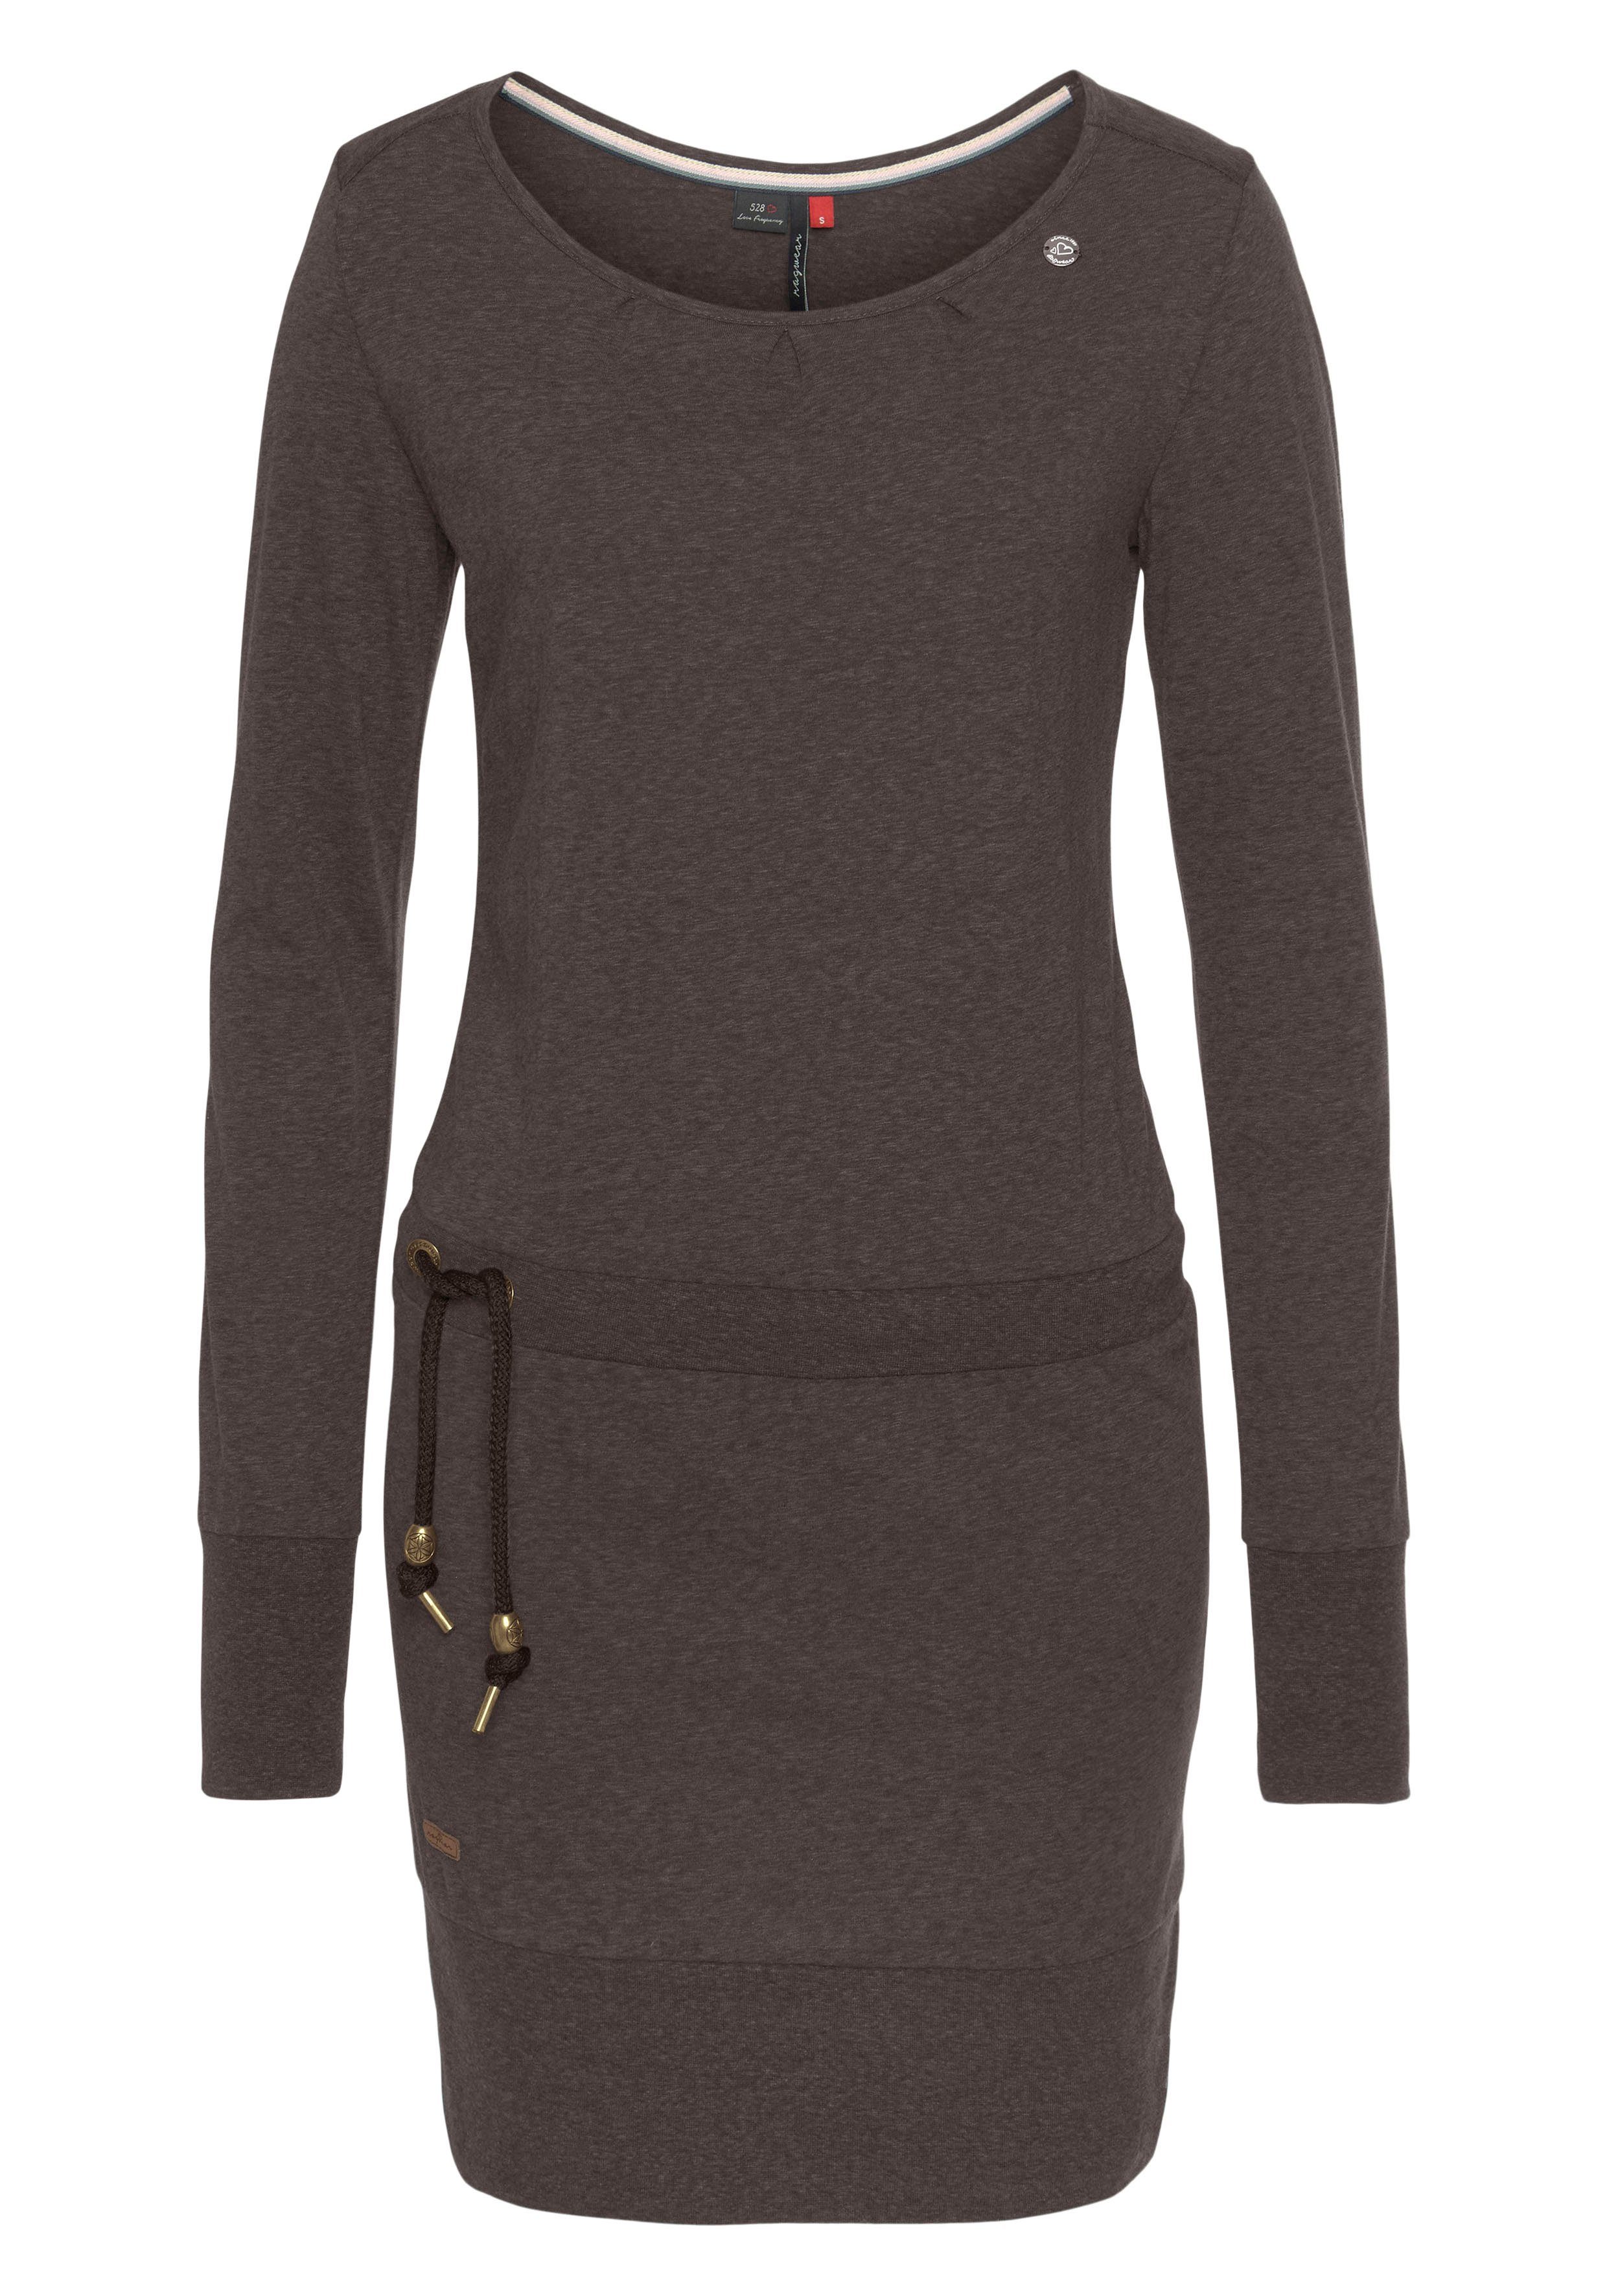 Ragwear Jerseykleid ALEXA mit Kordelzug und dark choco 6022 Zierperlen-Besatz kontrastigen